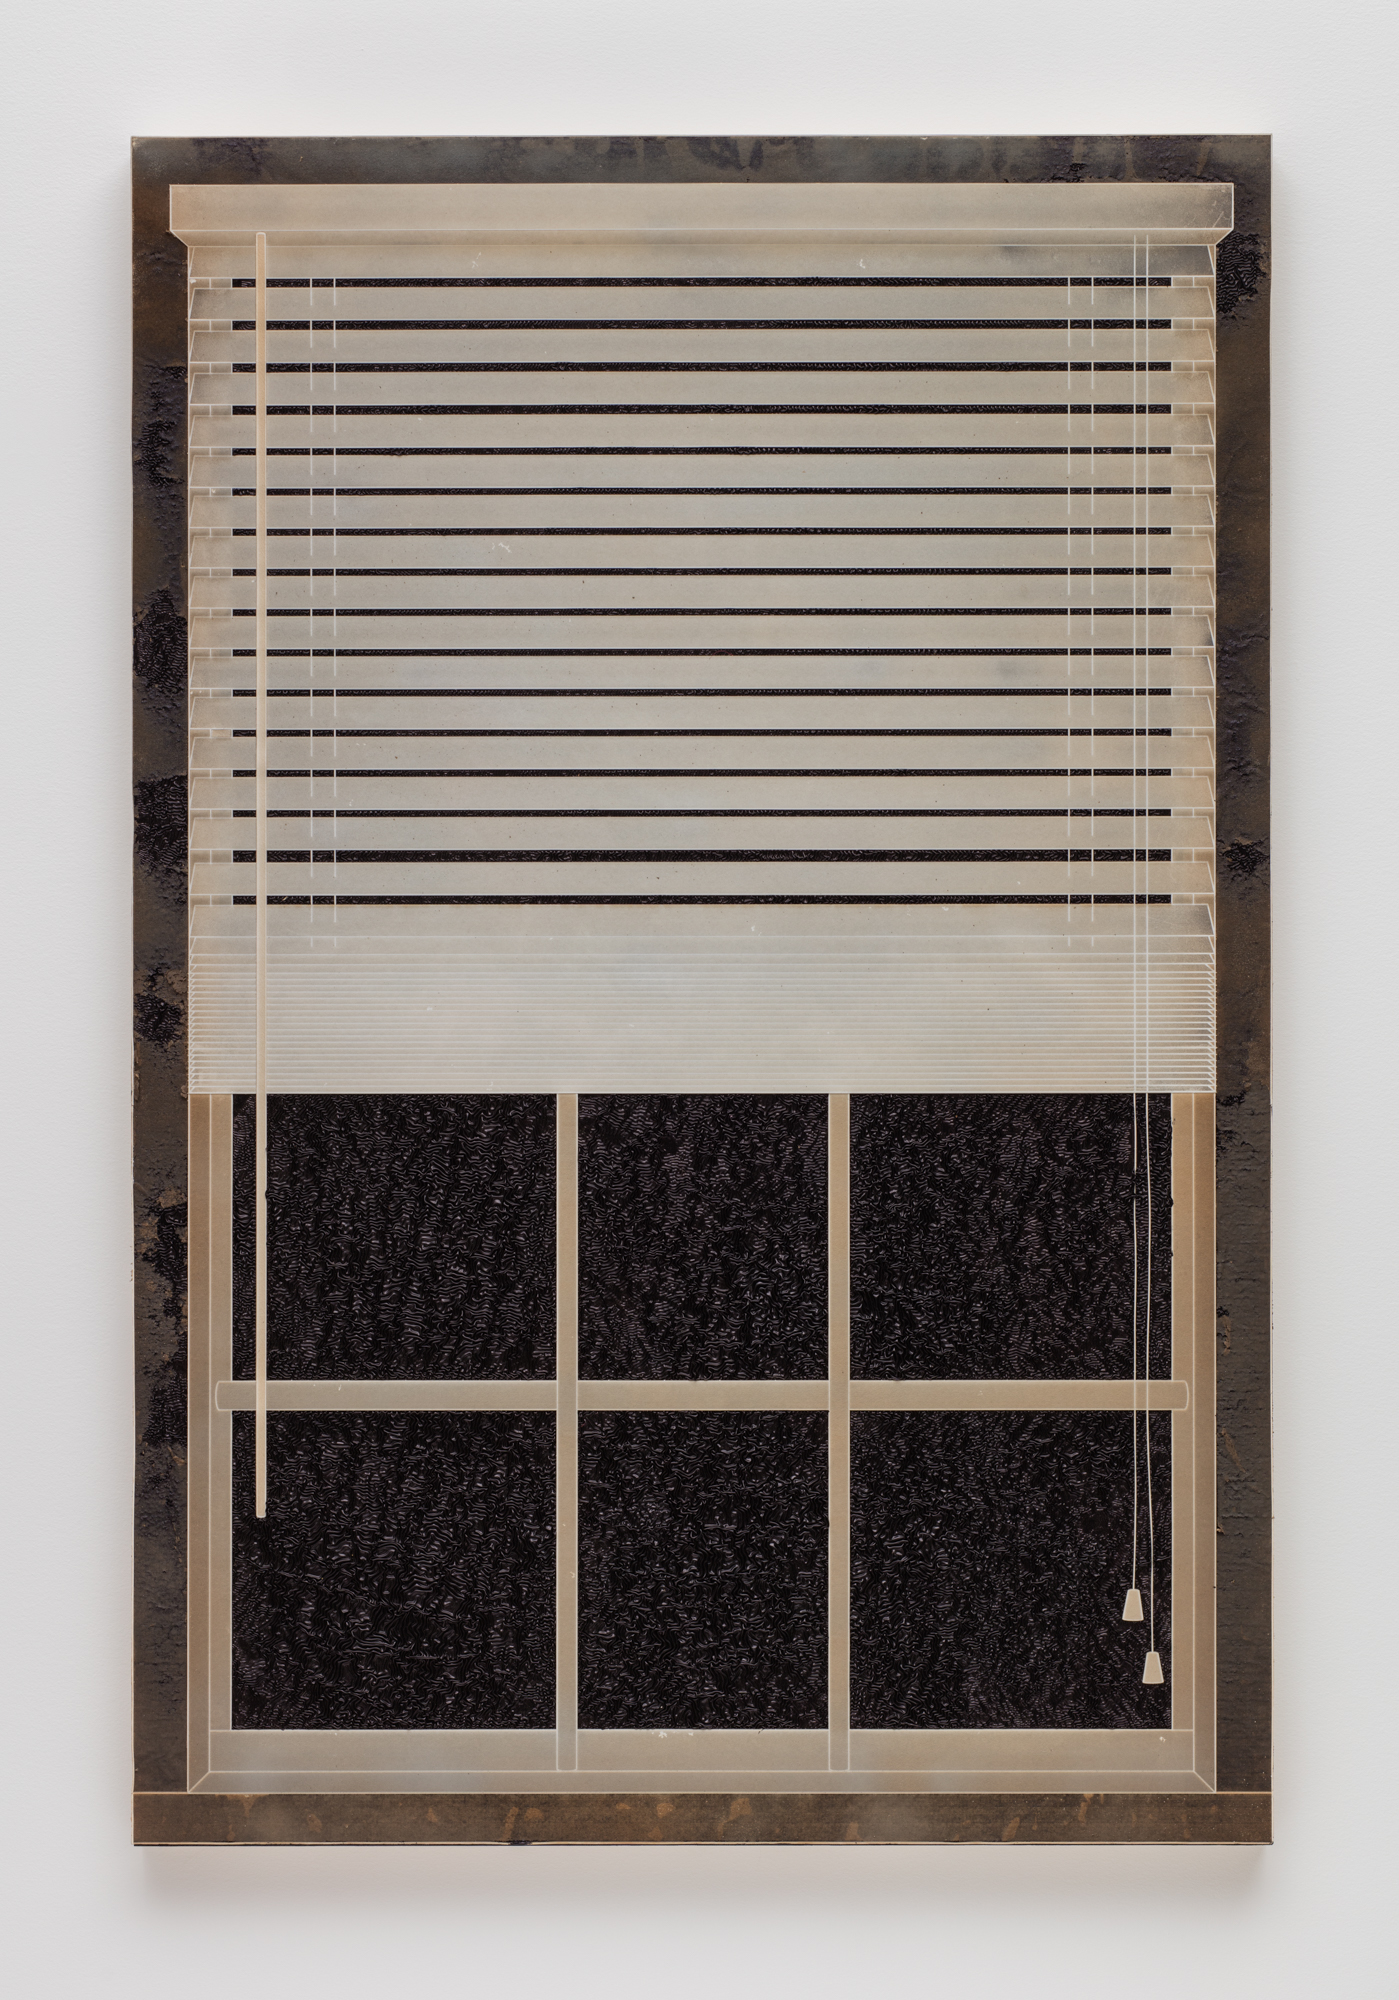 Analia Saban, Tinta plisada, Ventana con persianas, 2017. Papel esculpido con láser sobre tinta sobre panel de madera. 152,4 x 101,6 x 5,2 cm. Foto de Brian Forrest.